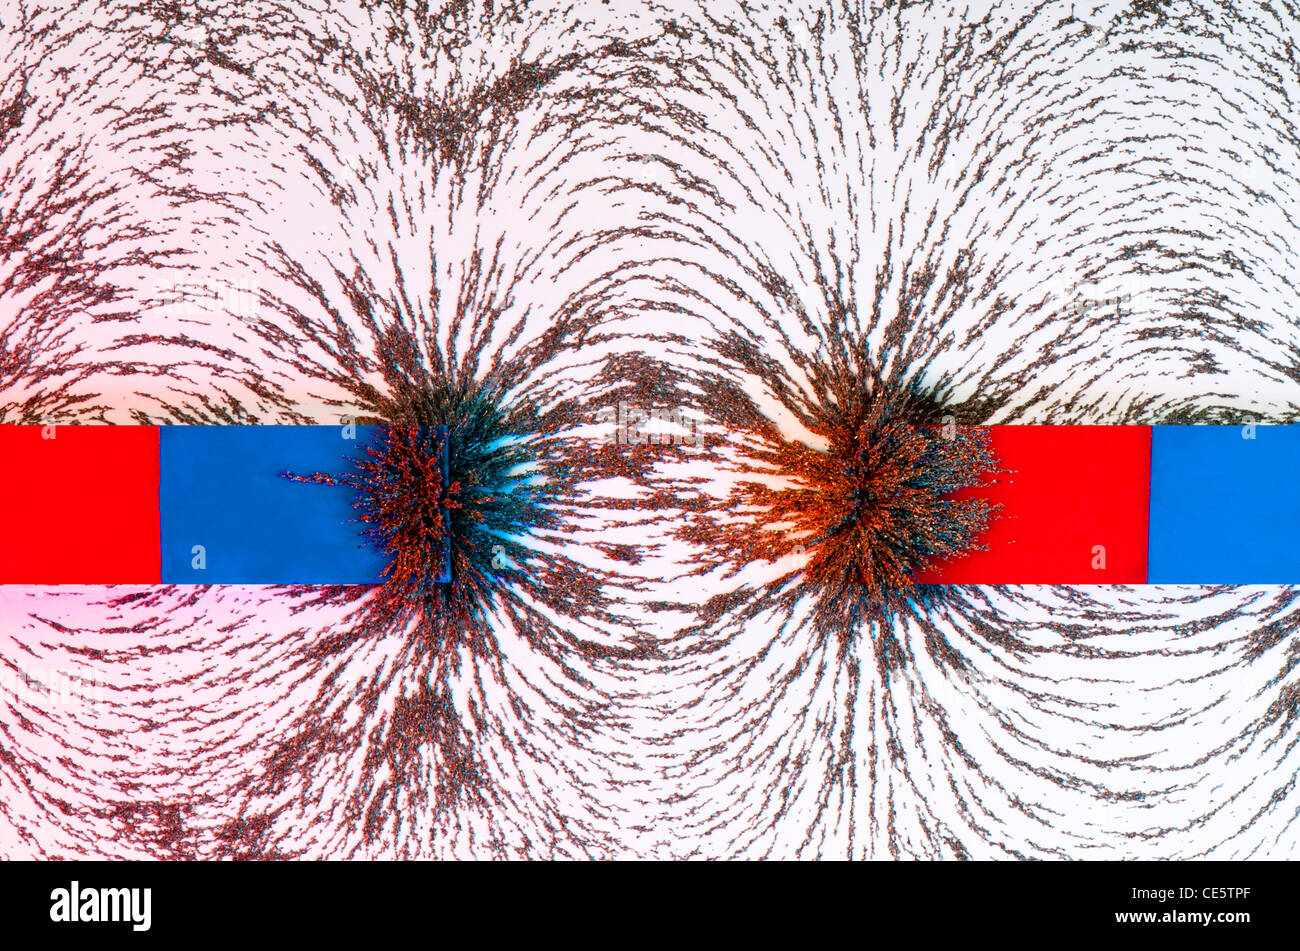 Le bace 'nord et sud d'un aimant avec le champ magnétique courbe et illustré à l'aide de limaille de fer illuminée en rouge et bleu Banque D'Images